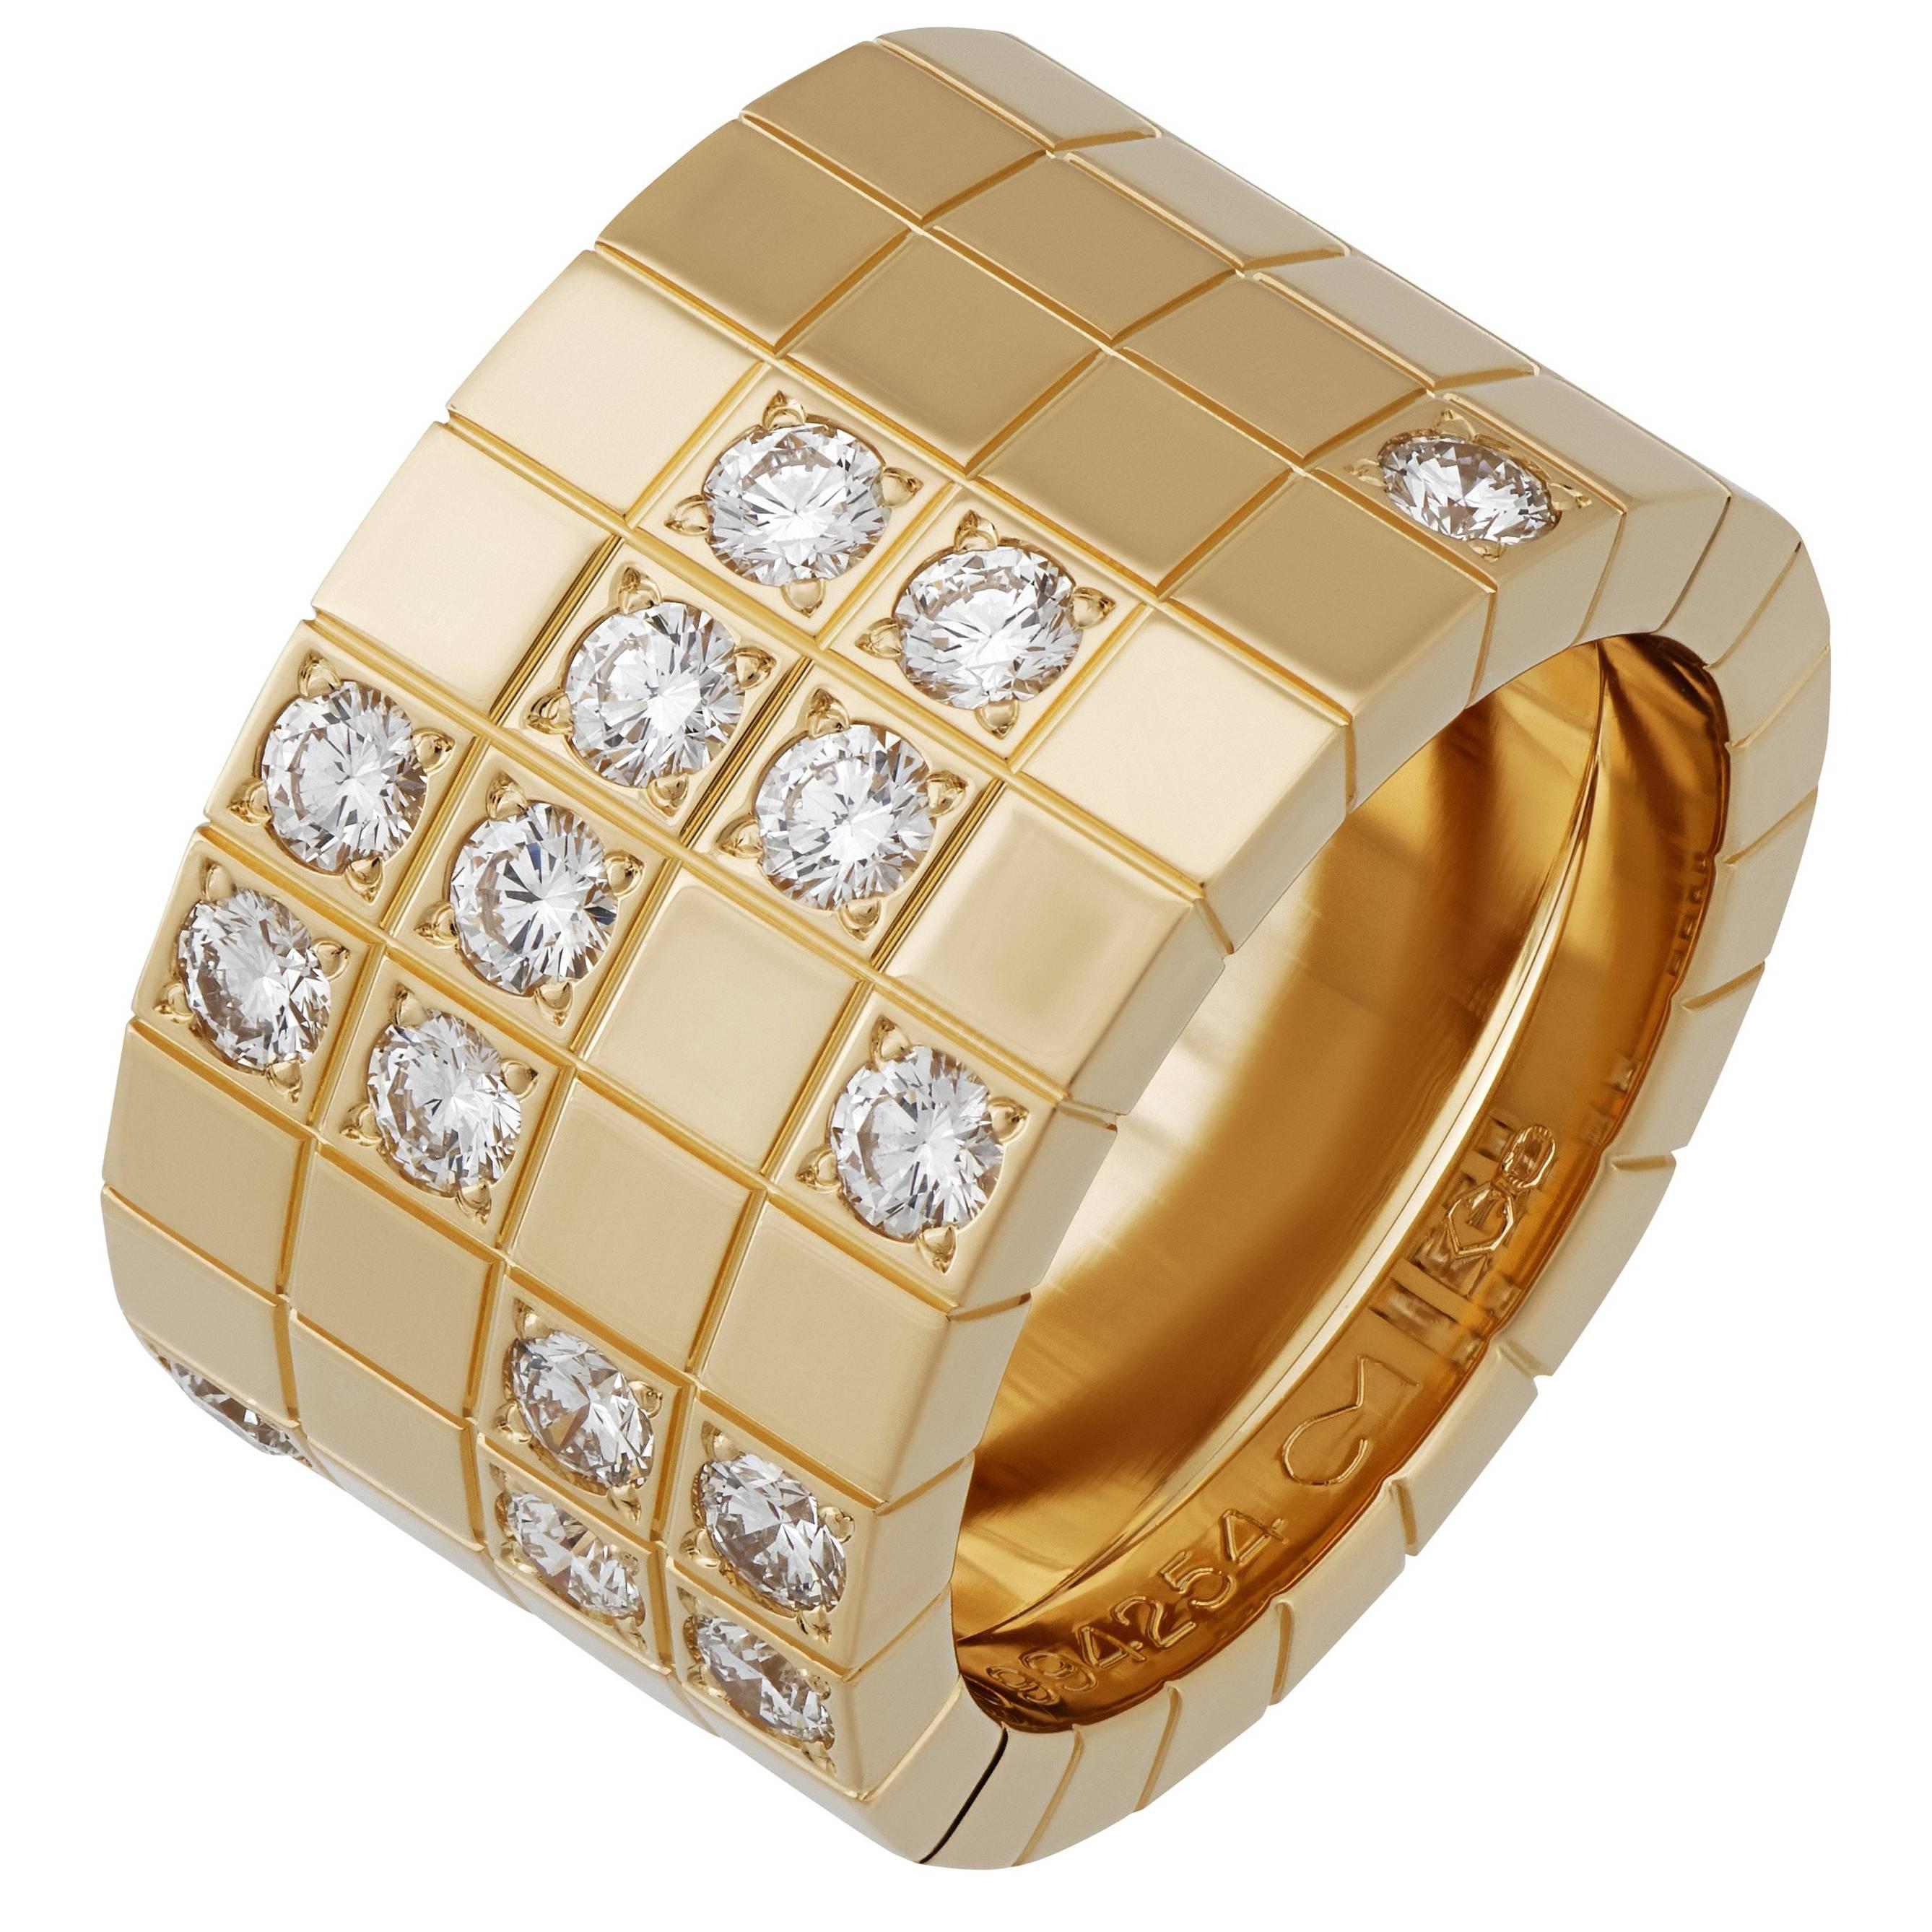 Cartier 18 Karat Yellow Gold Lanieres Ring